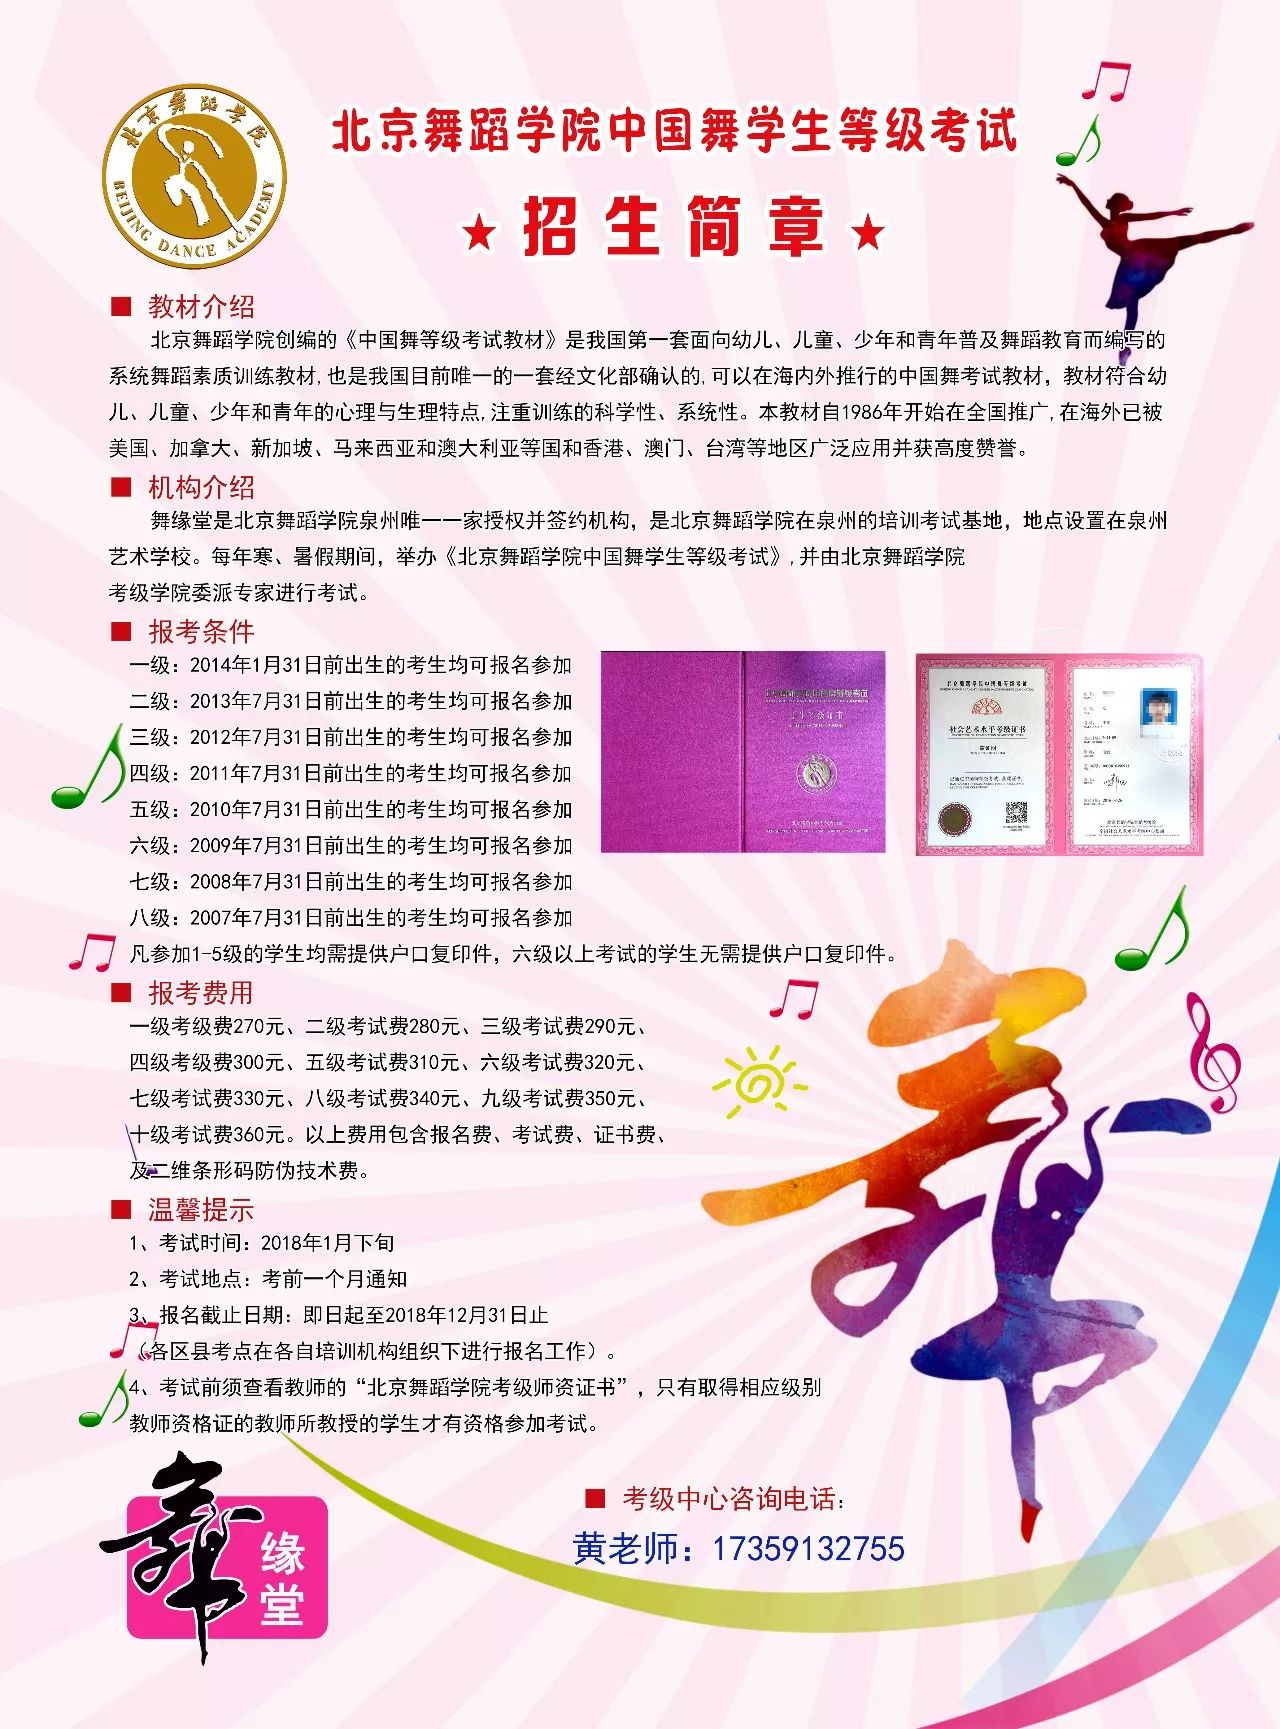 北京舞蹈学院中国舞学生等级考试开始报名啦!